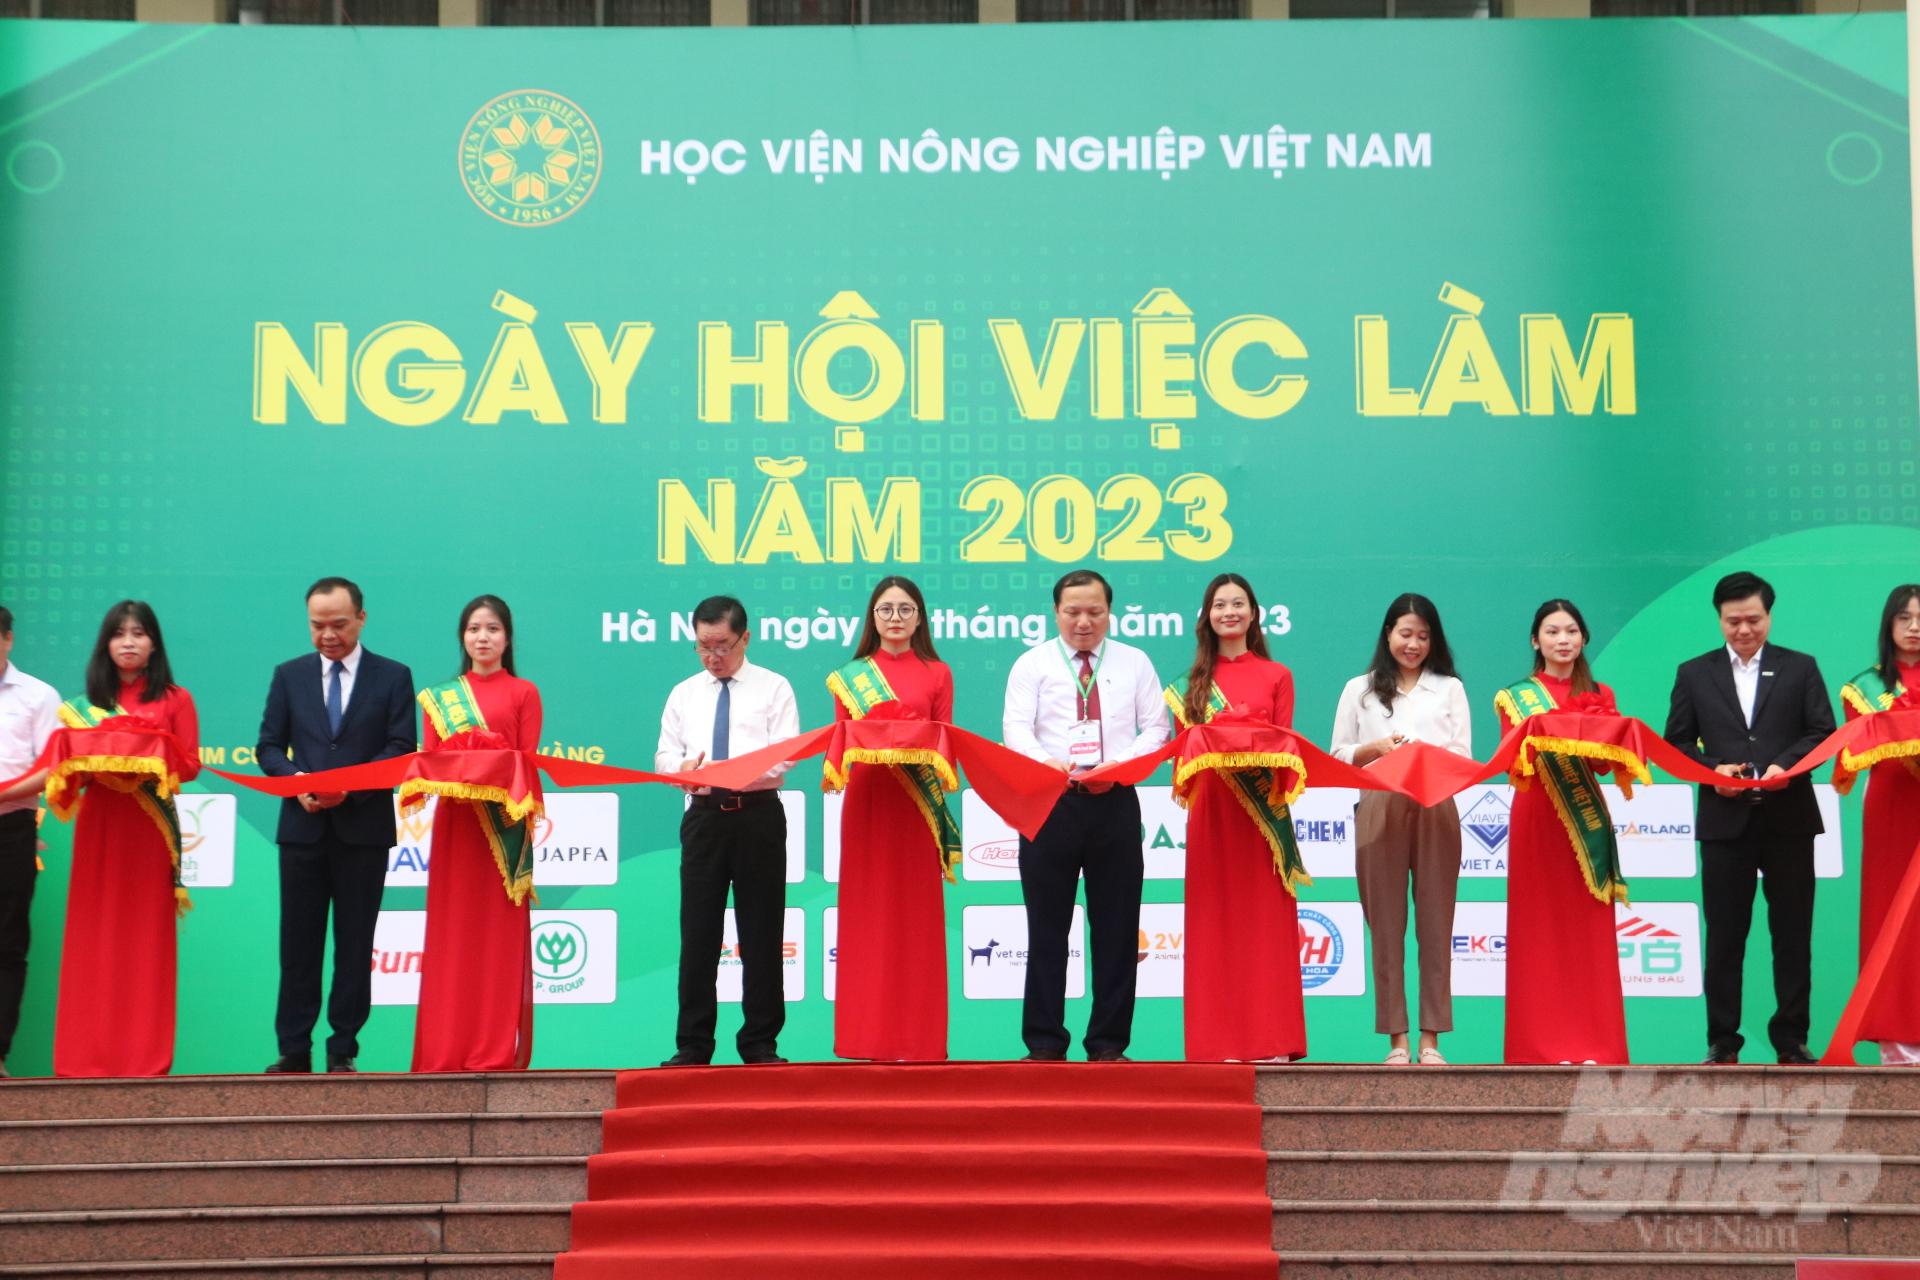 Ngày hội việc làm năm 2023 của Học viện Nông nghiệp Việt Nam thu hút 68 doanh nghiệp tham gia tuyển dụng với gần 4.000 cơ hội thực tập, việc làm được đăng ký. Ảnh: Hưng Giang.